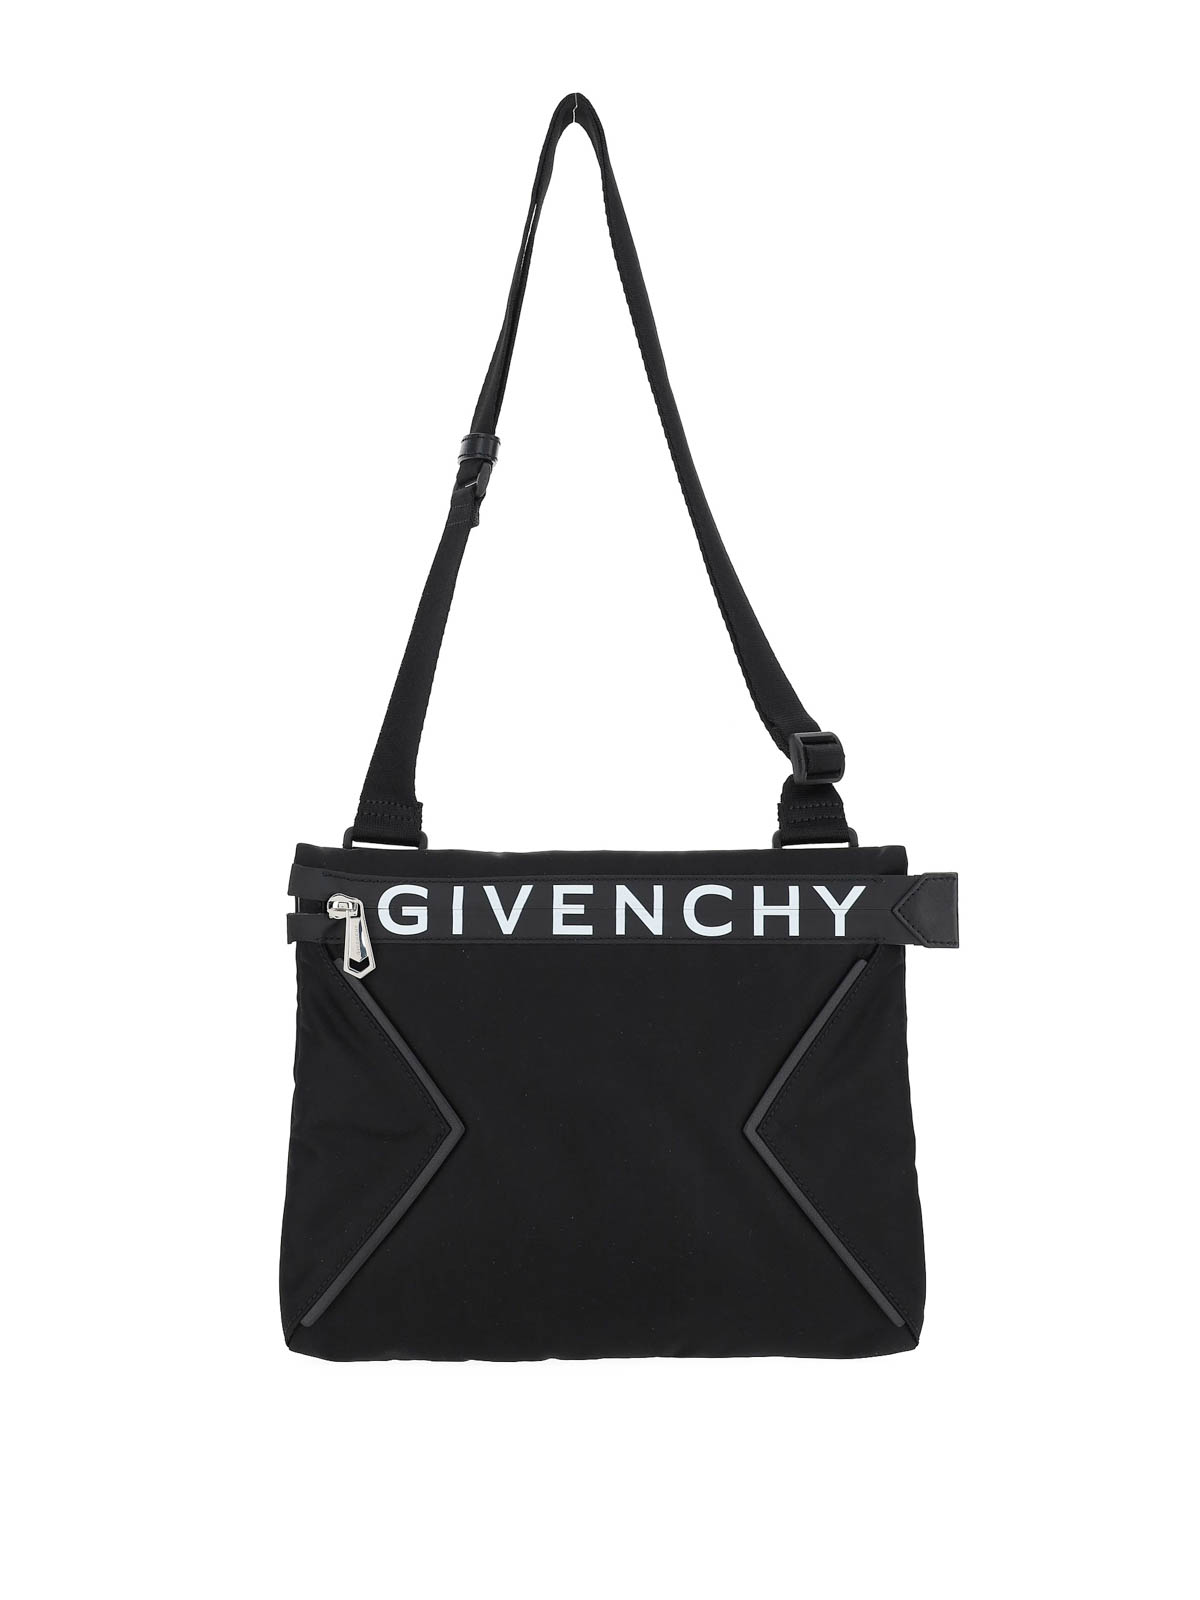 ショルダーバッグ Givenchy - ショルダーバッグ - 黒 - BK507QK0YM004